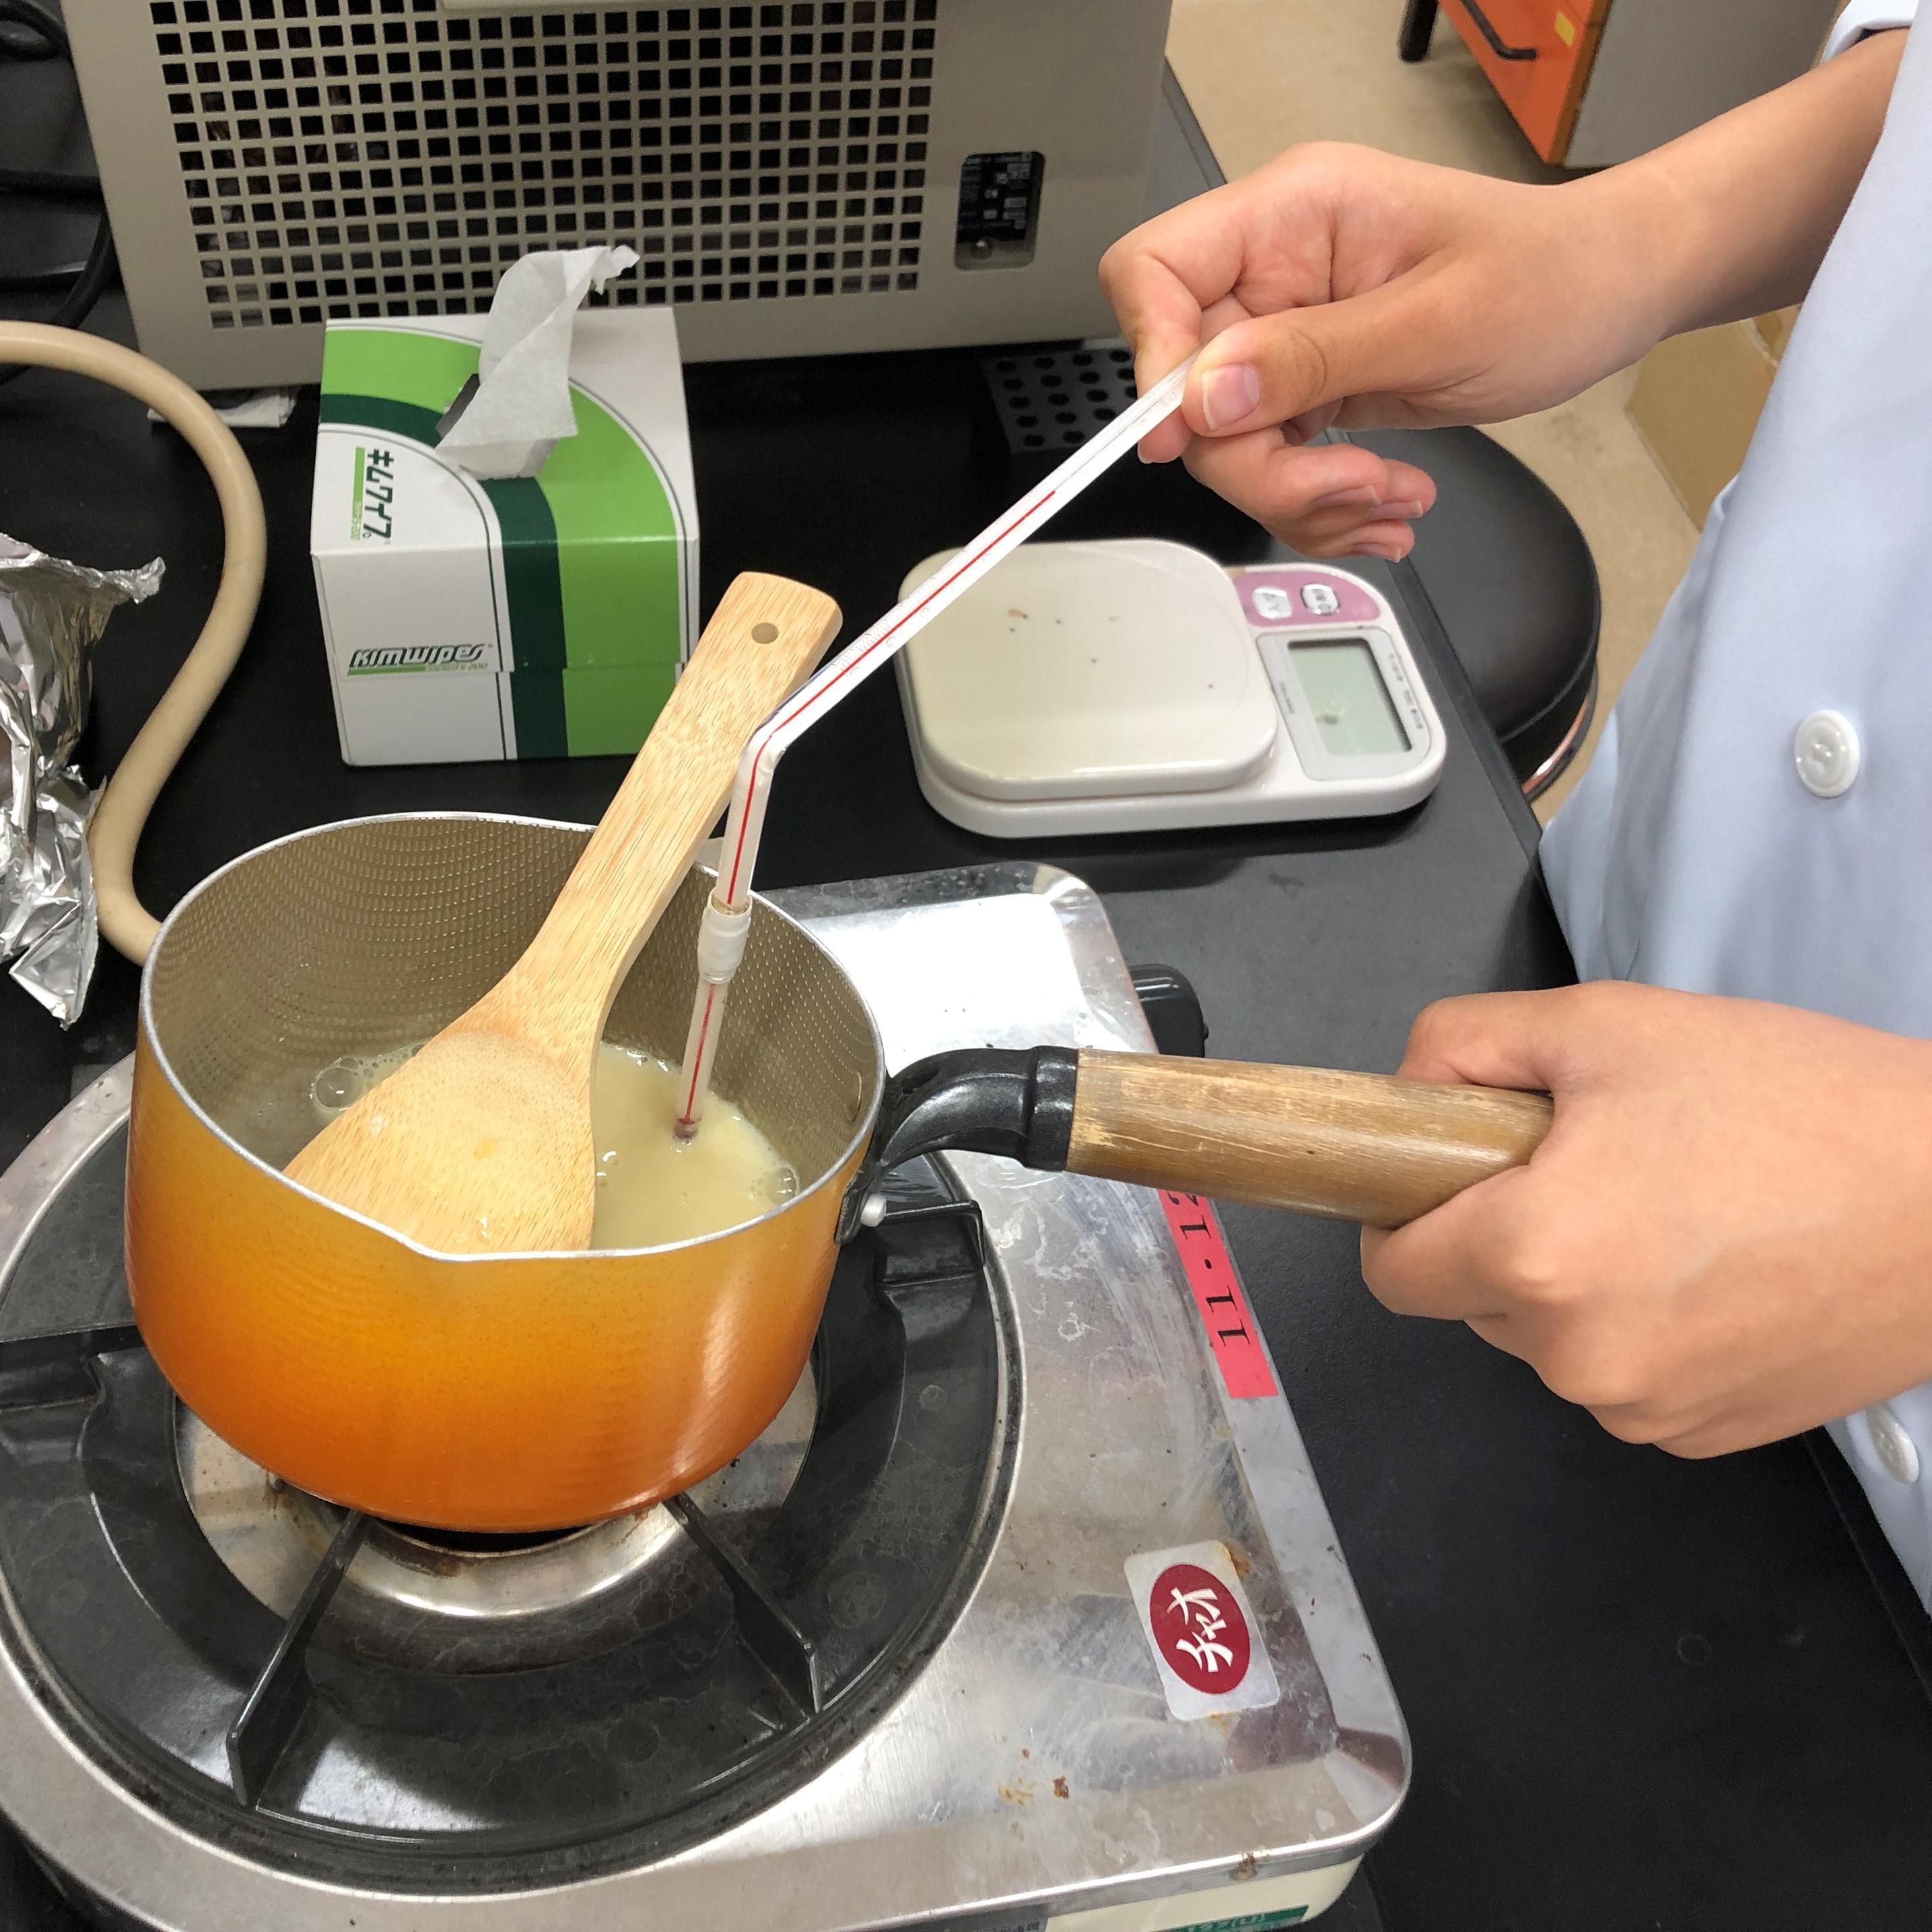 「豆蜂」で特許取得の武庫川女子大学食品科学研究室が、食物アレルギーやえん下障害の人に向けた進化系スイーツを開発。